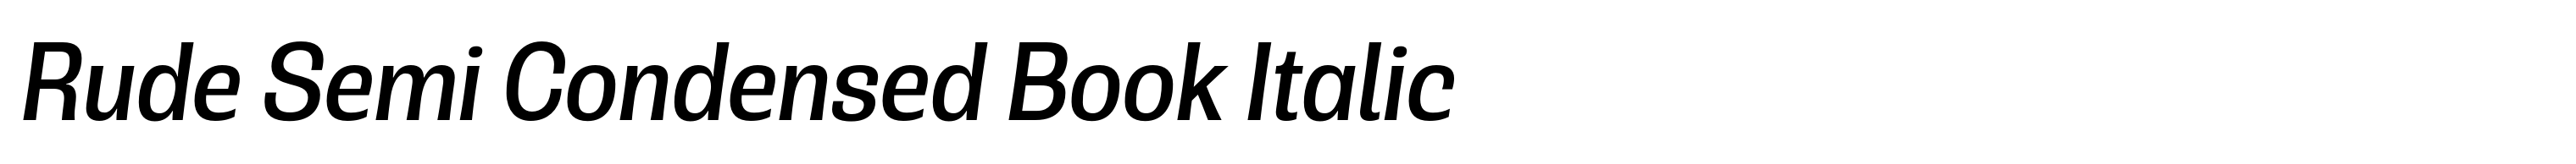 Rude Semi Condensed Book Italic